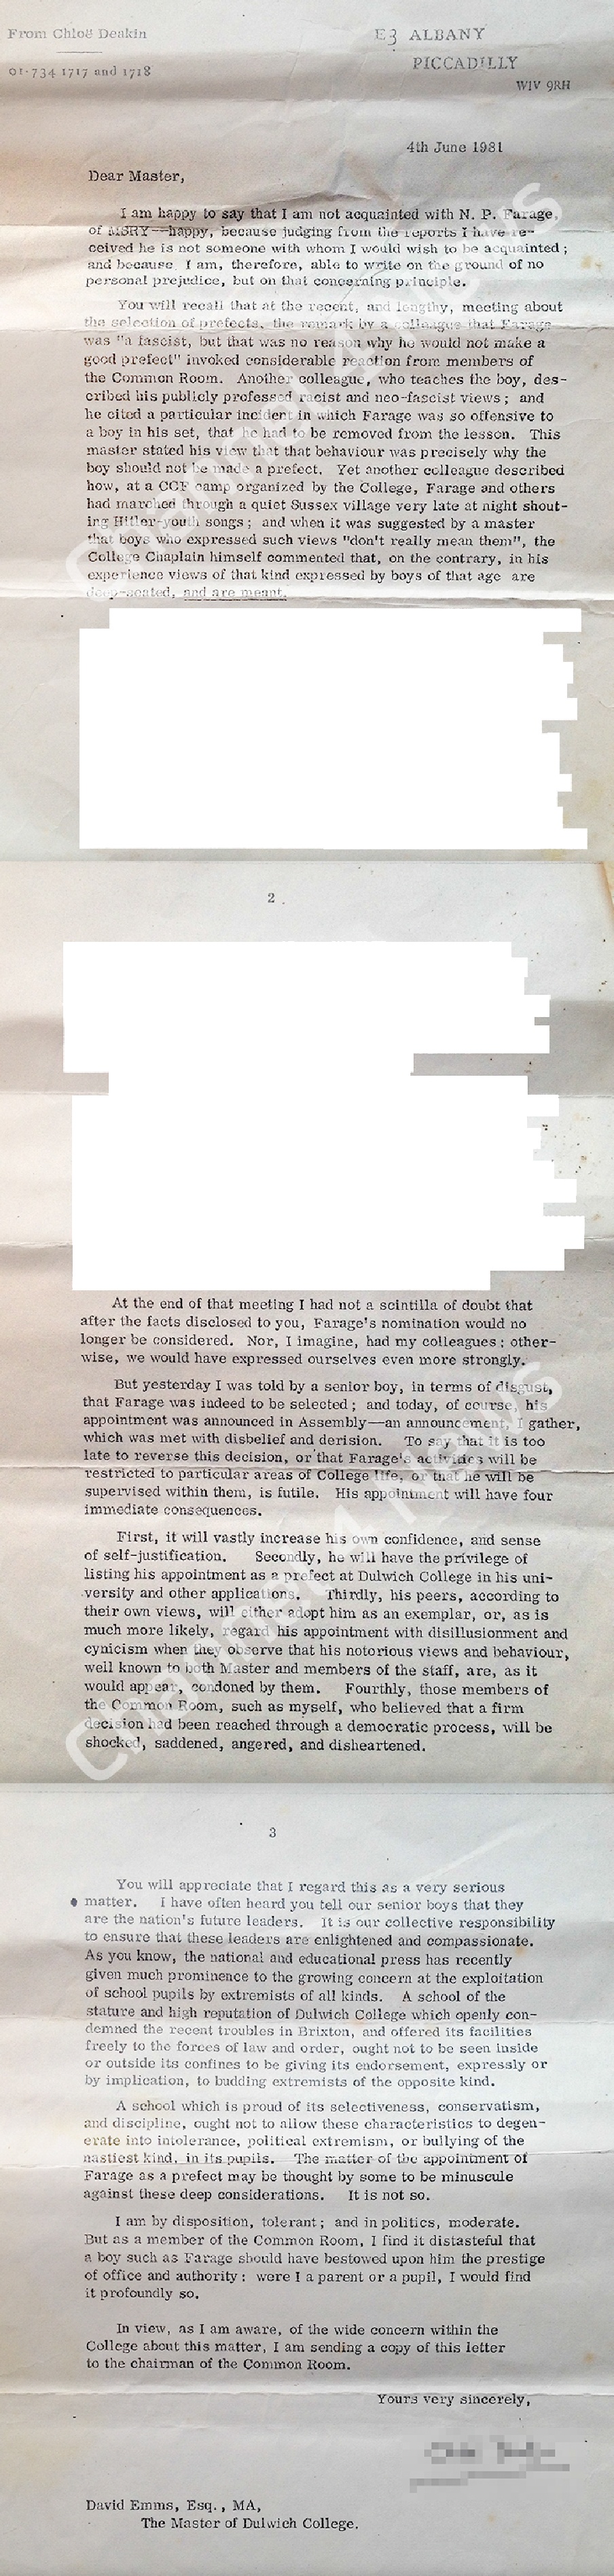 FARAGE School Letter 1981 01